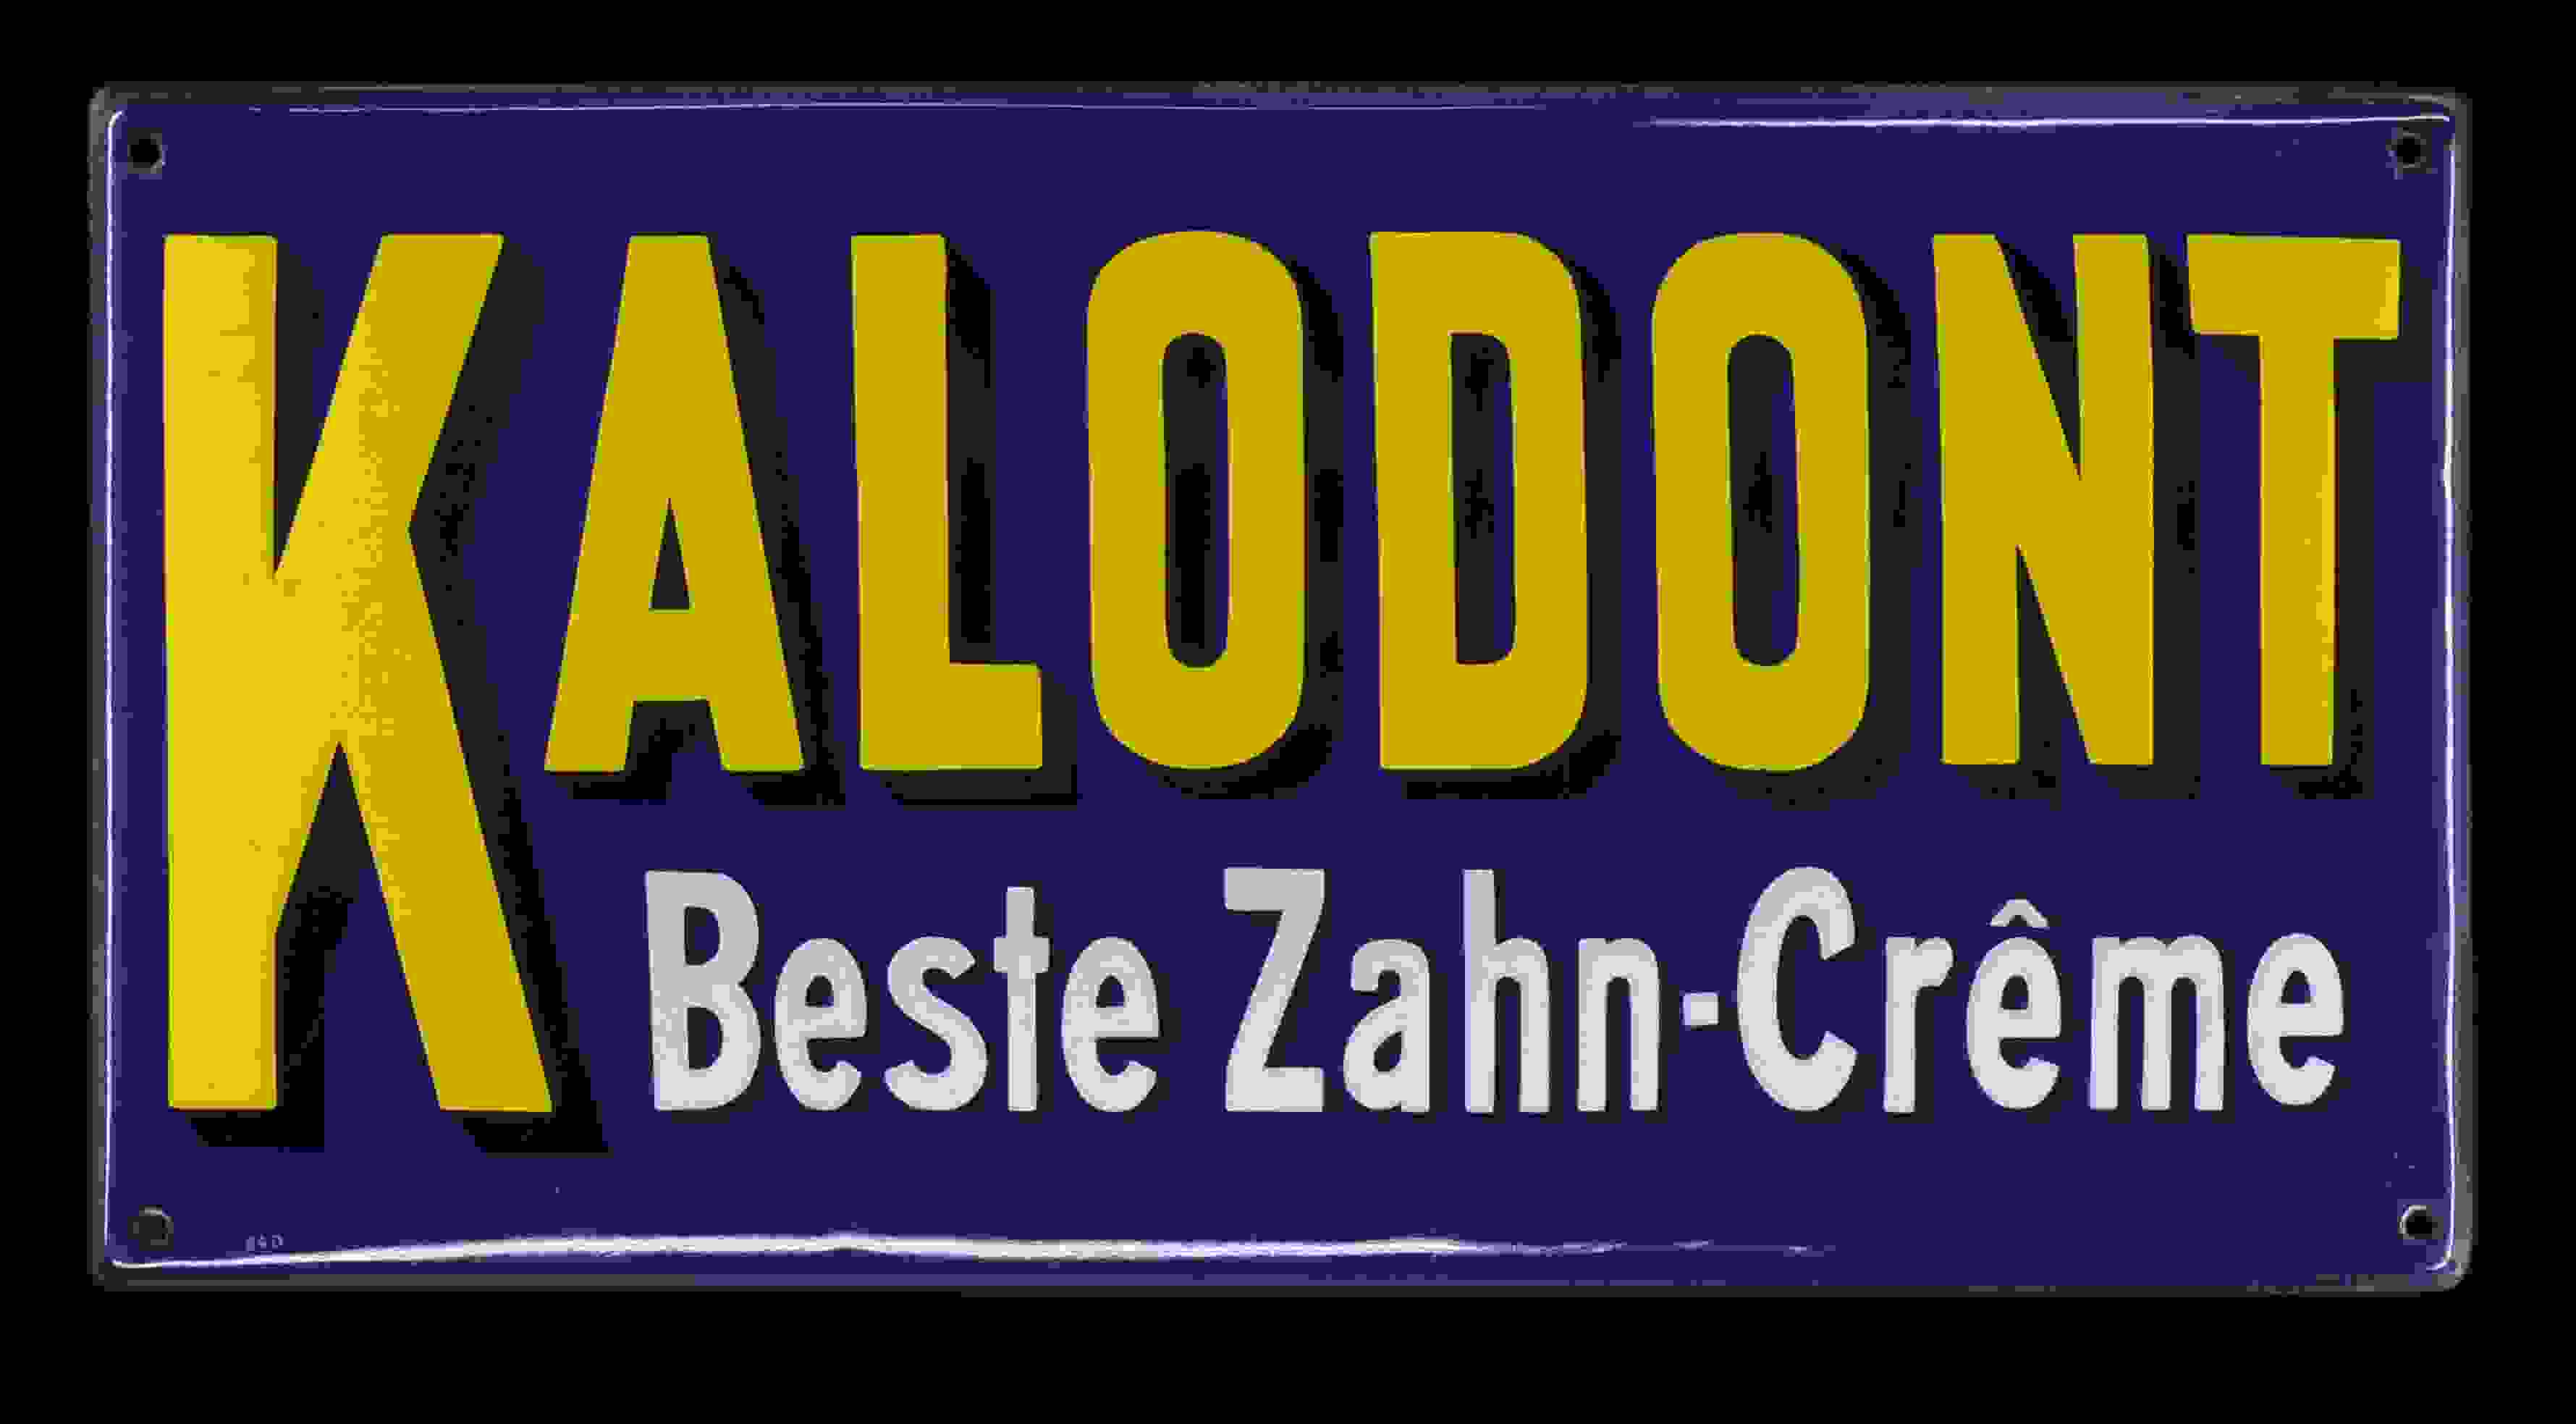 Kalodont Beste Zahn-Crême 